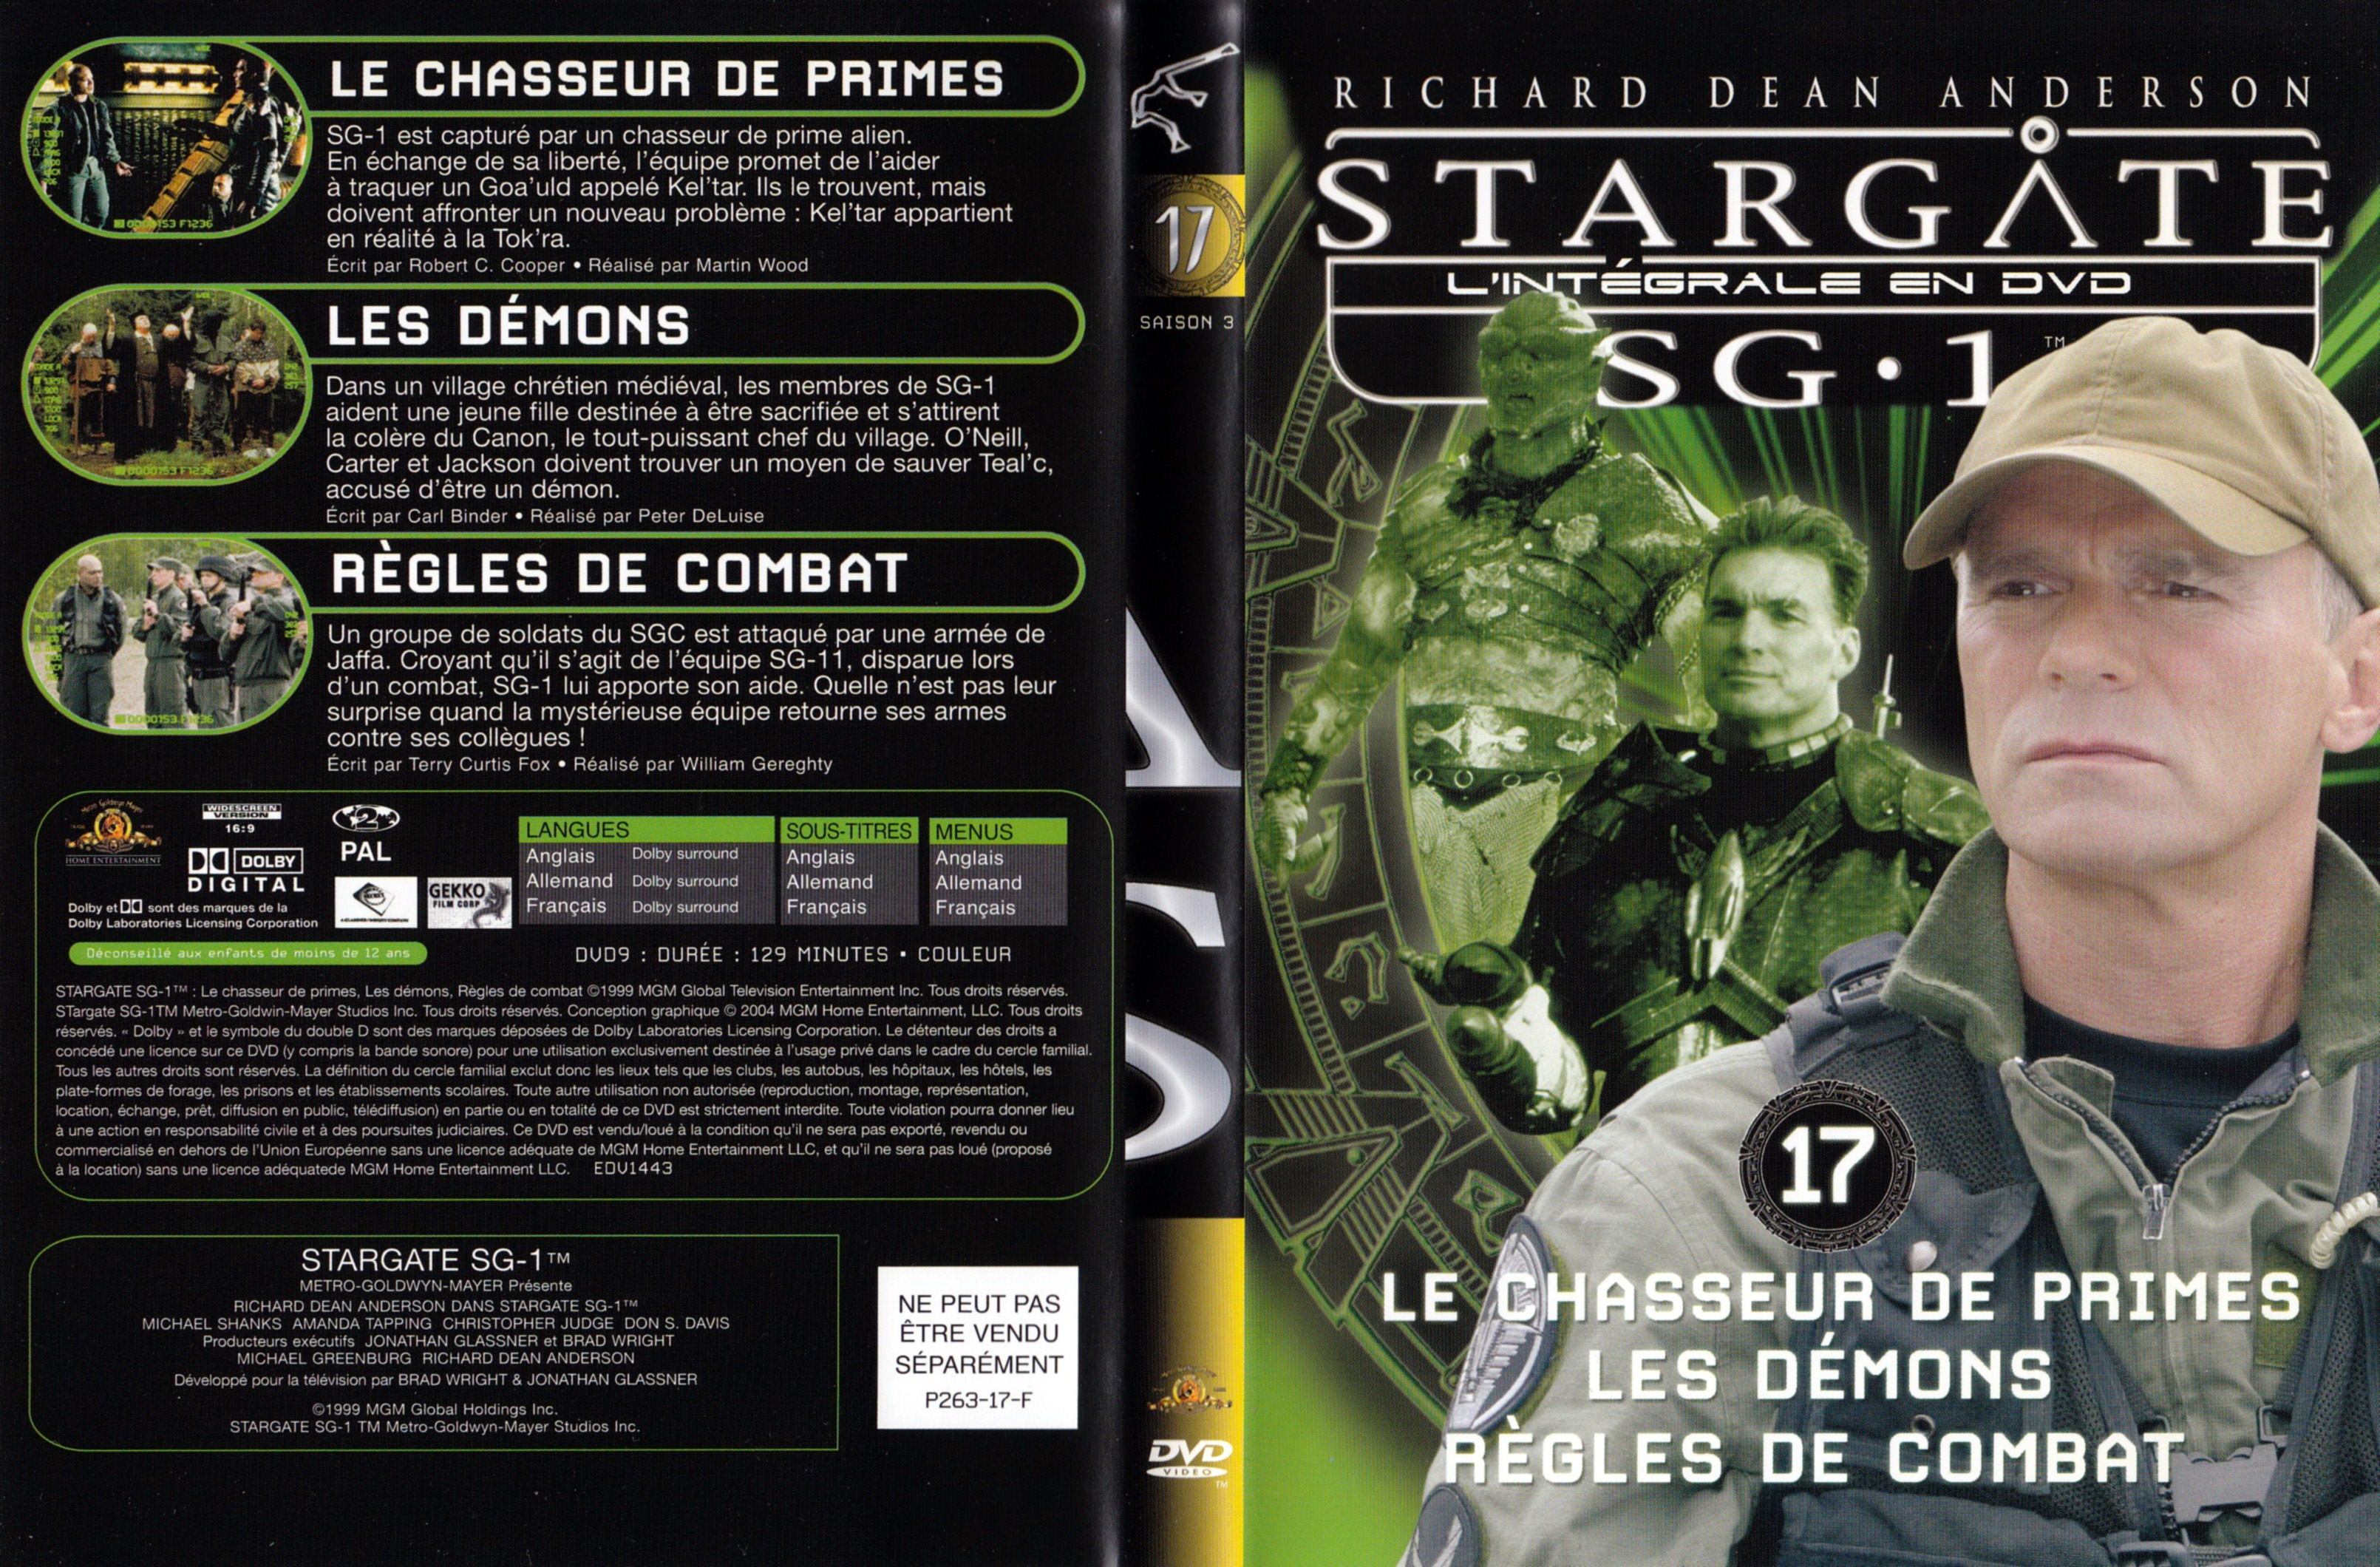 Jaquette DVD Stargate SG1 Intgrale Saison 3 vol 17